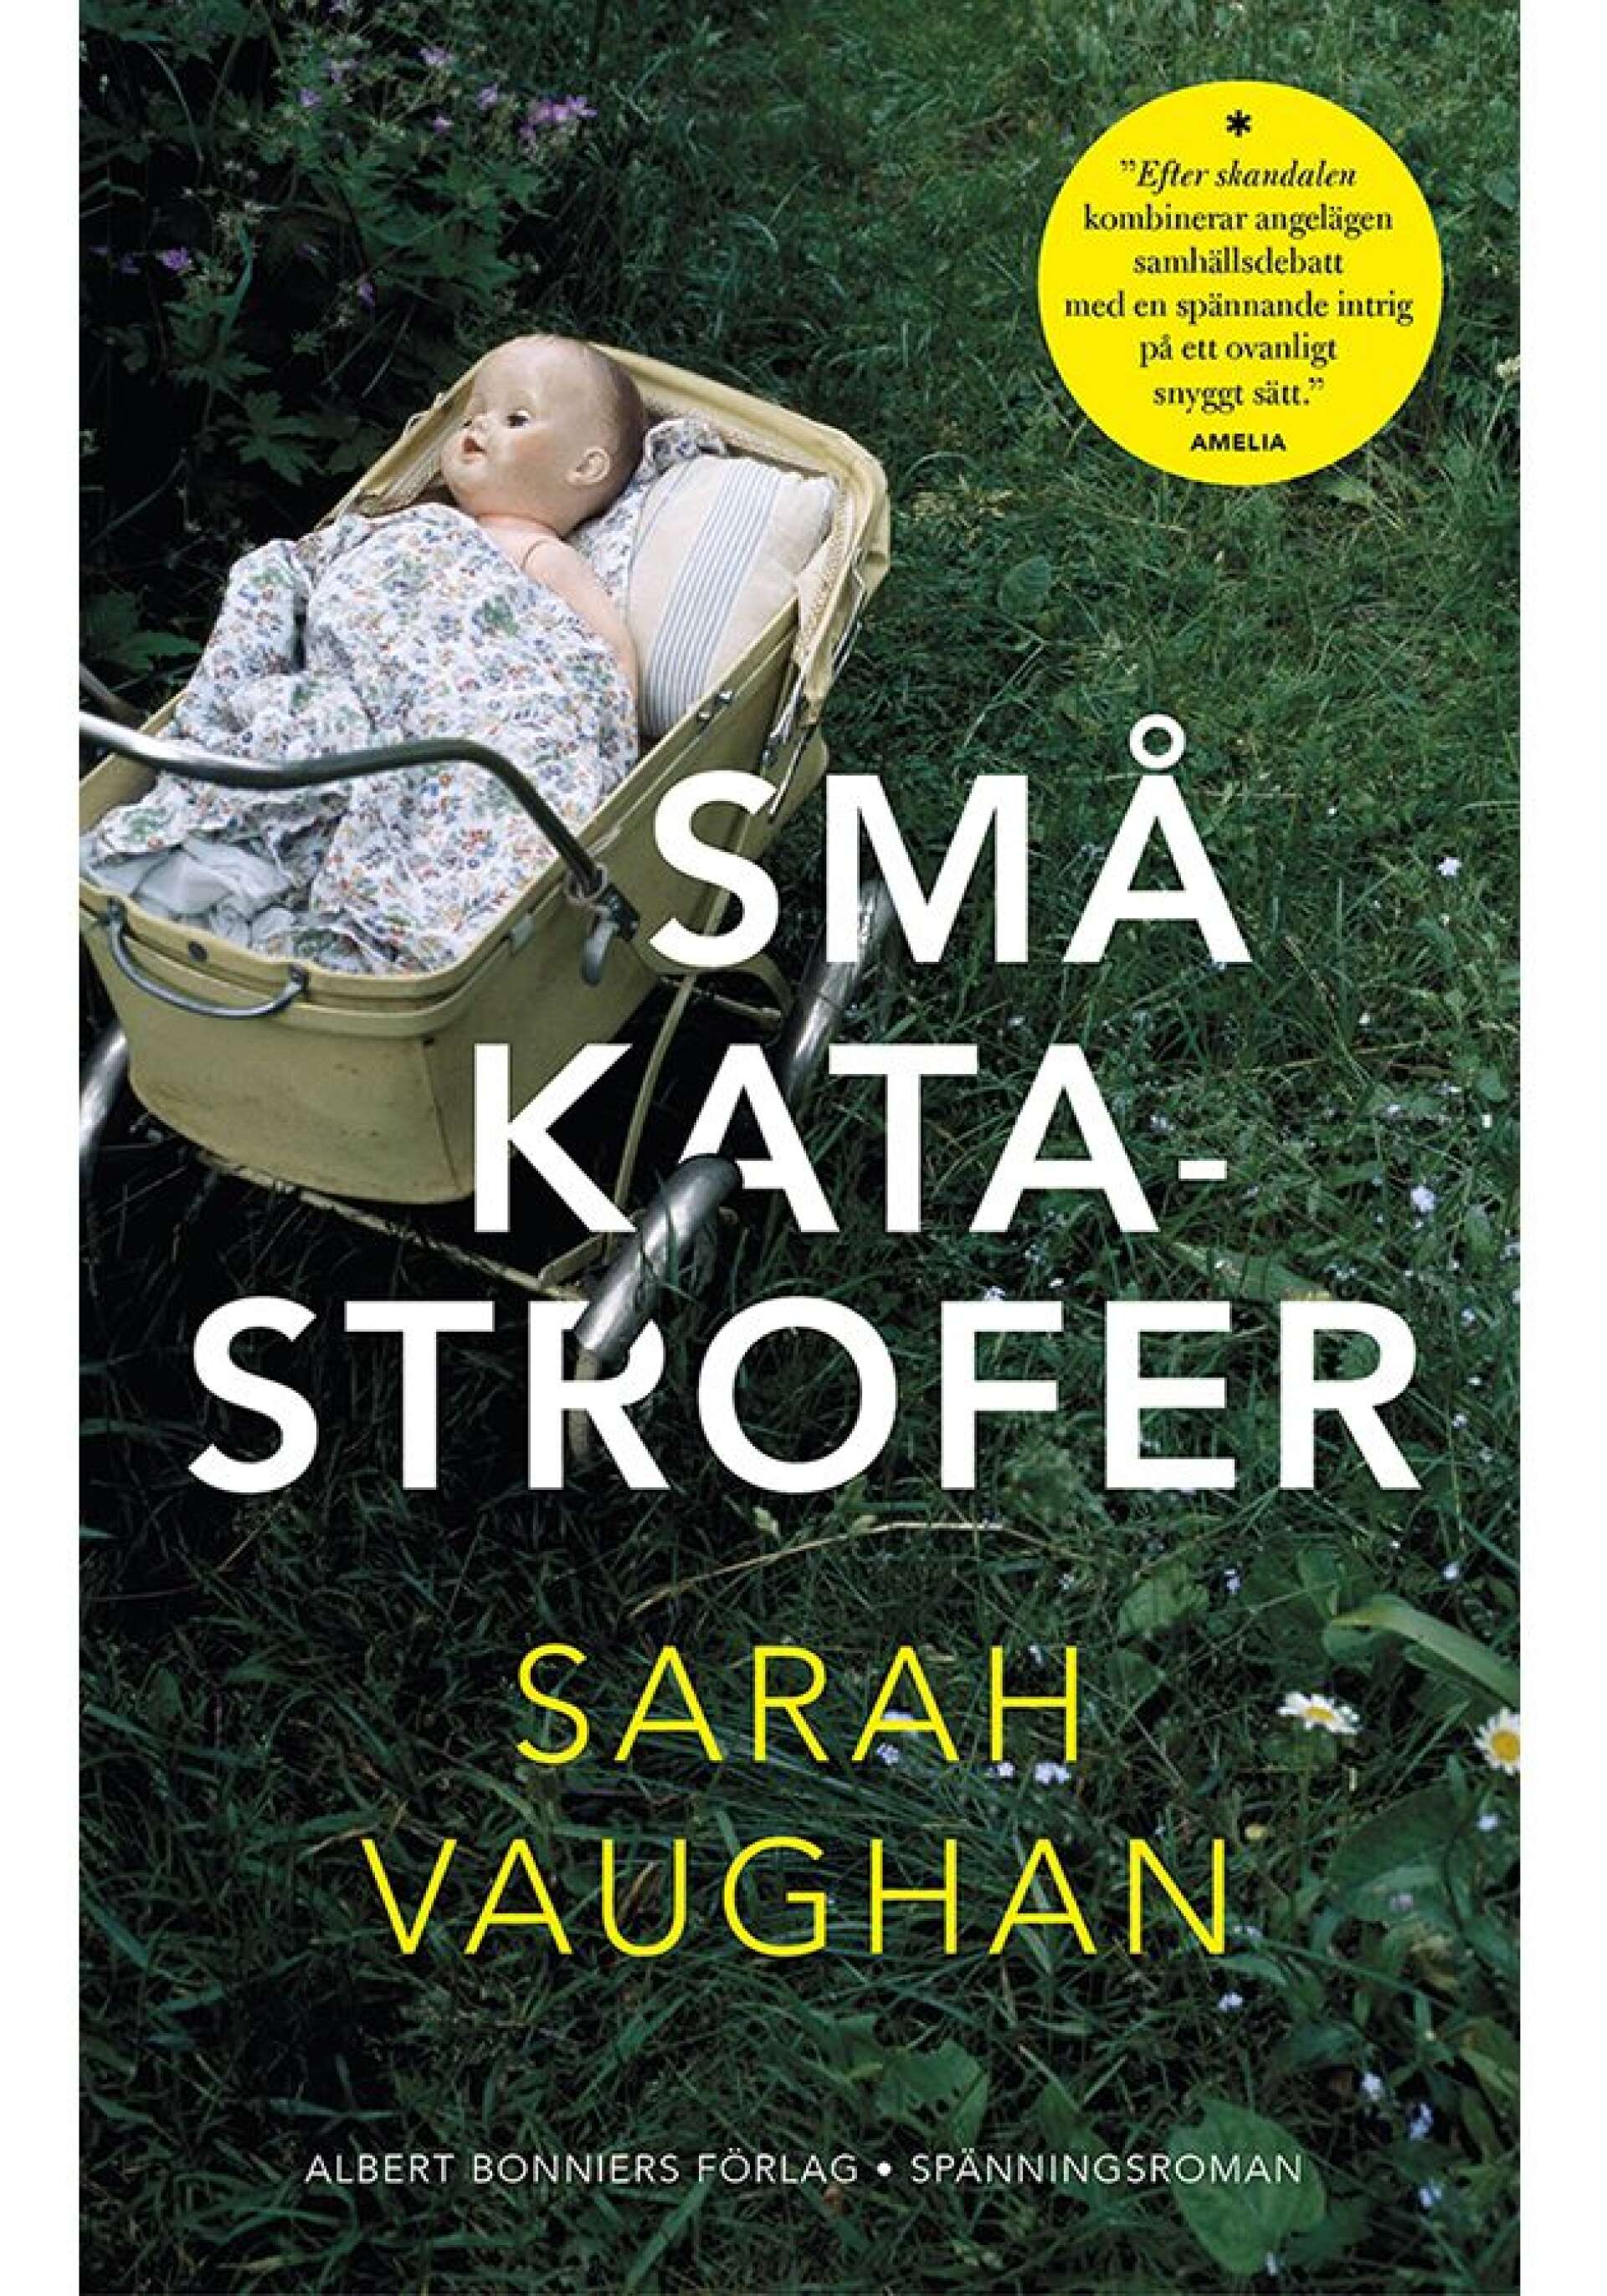 Små katastrofer av Sarah Vaughan (Albert Bonniers). Översättning av Johan Nilsson.